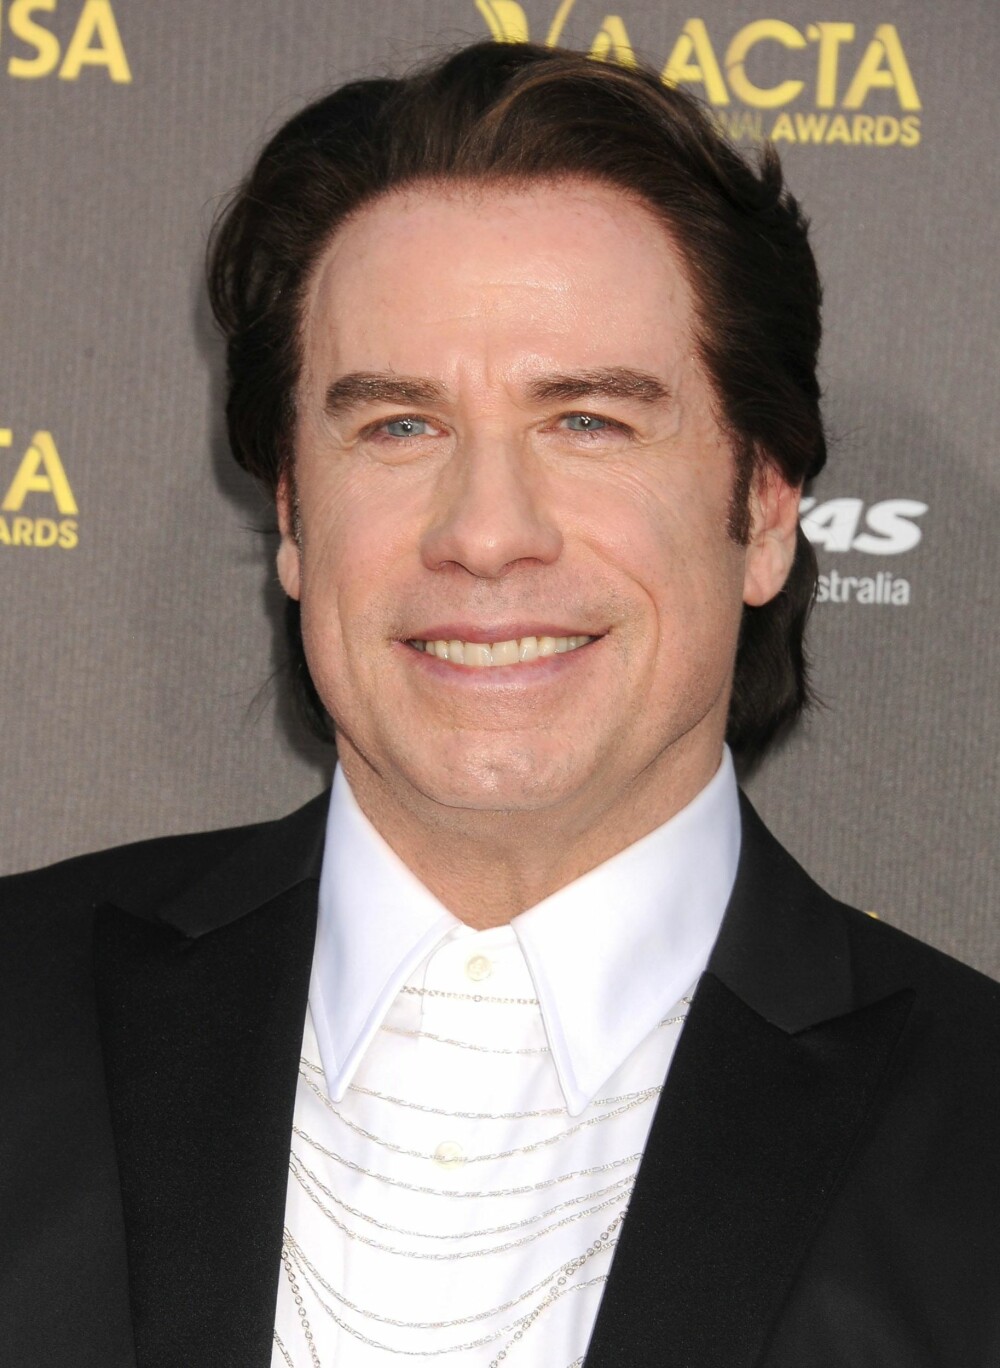 FARGE PÅ BOKS: John Travolta har nok gjort både det ene og det andre med håret sitt, men hårfargen ser man tydelig at ikke er ekte.